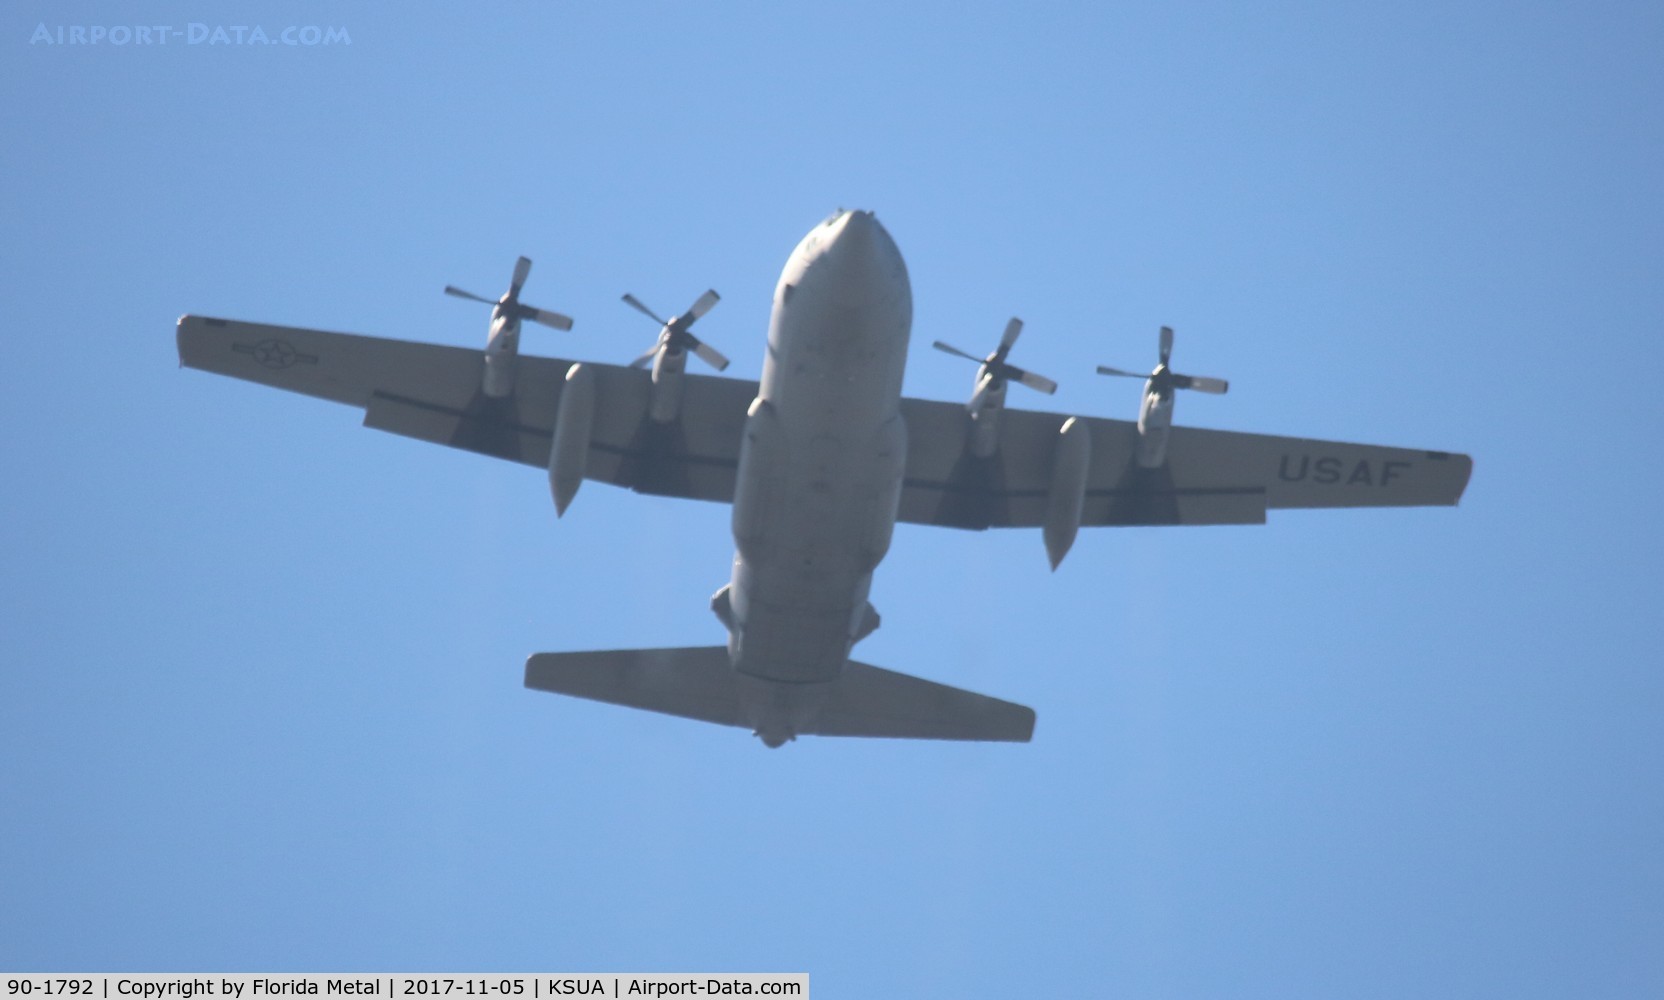 90-1792, 1990 Lockheed C-130H Hercules C/N 382-5245, Stuart Air Show 2017